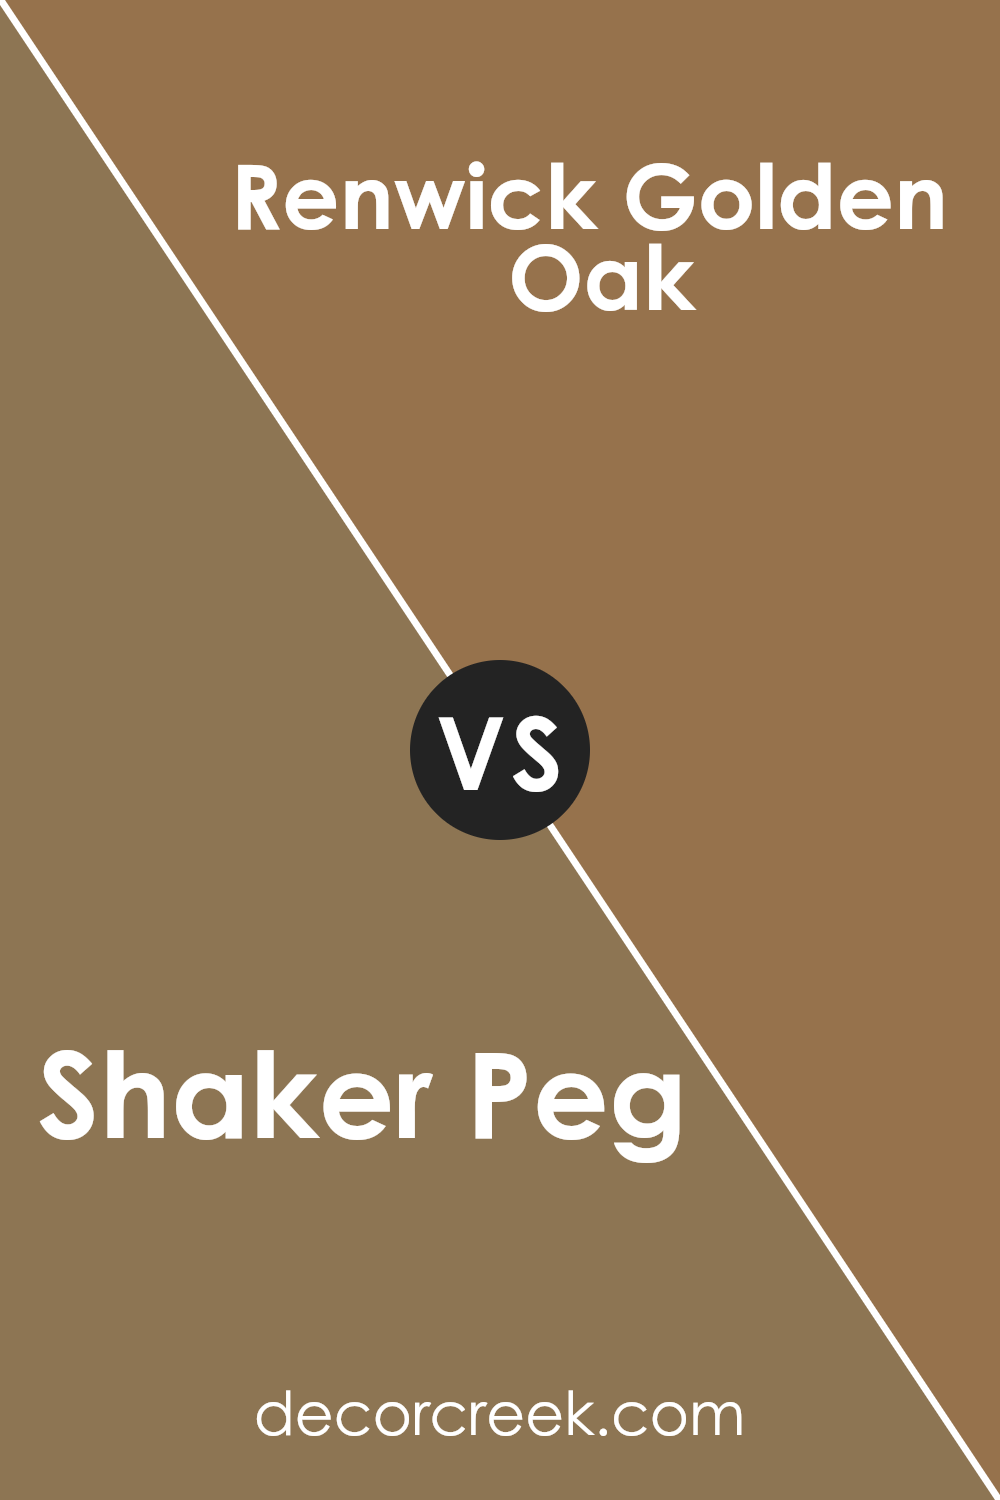 shaker_peg_sw_9539_vs_renwick_golden_oak_sw_2824